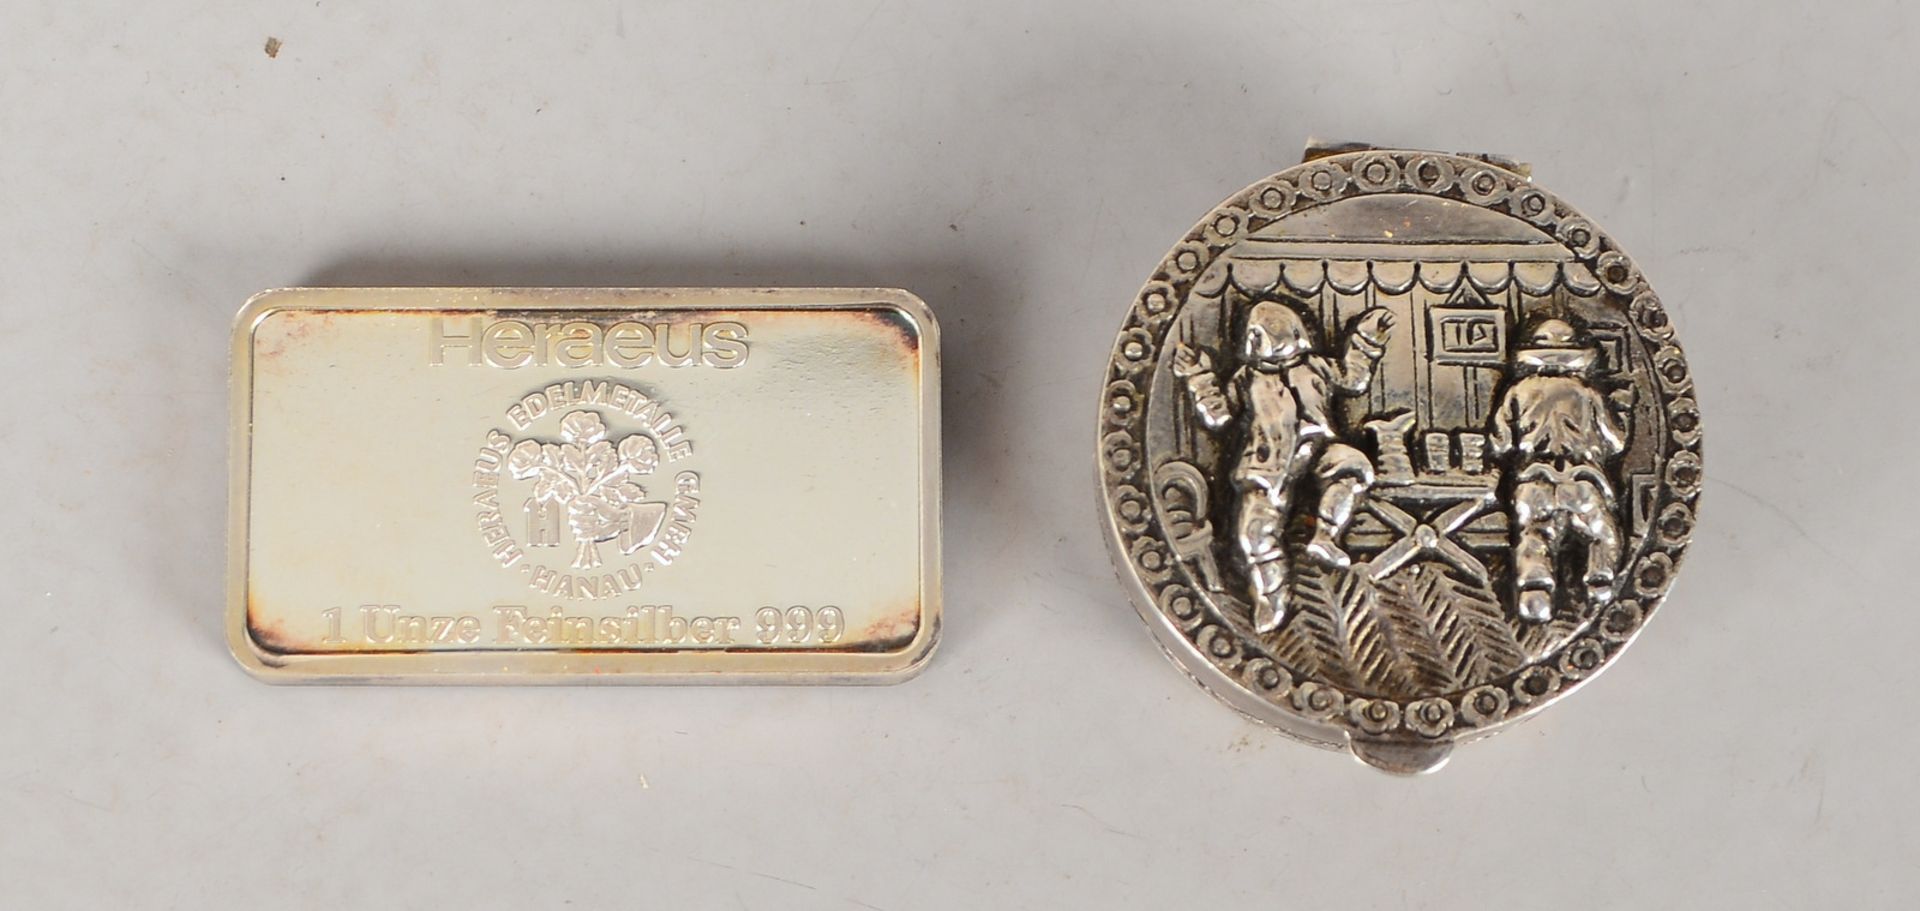 Pillendose, 800 Silber, Deckel mit Reliefmotiv, und Heraeus-Barren, 999 Feinsilber - Image 2 of 2